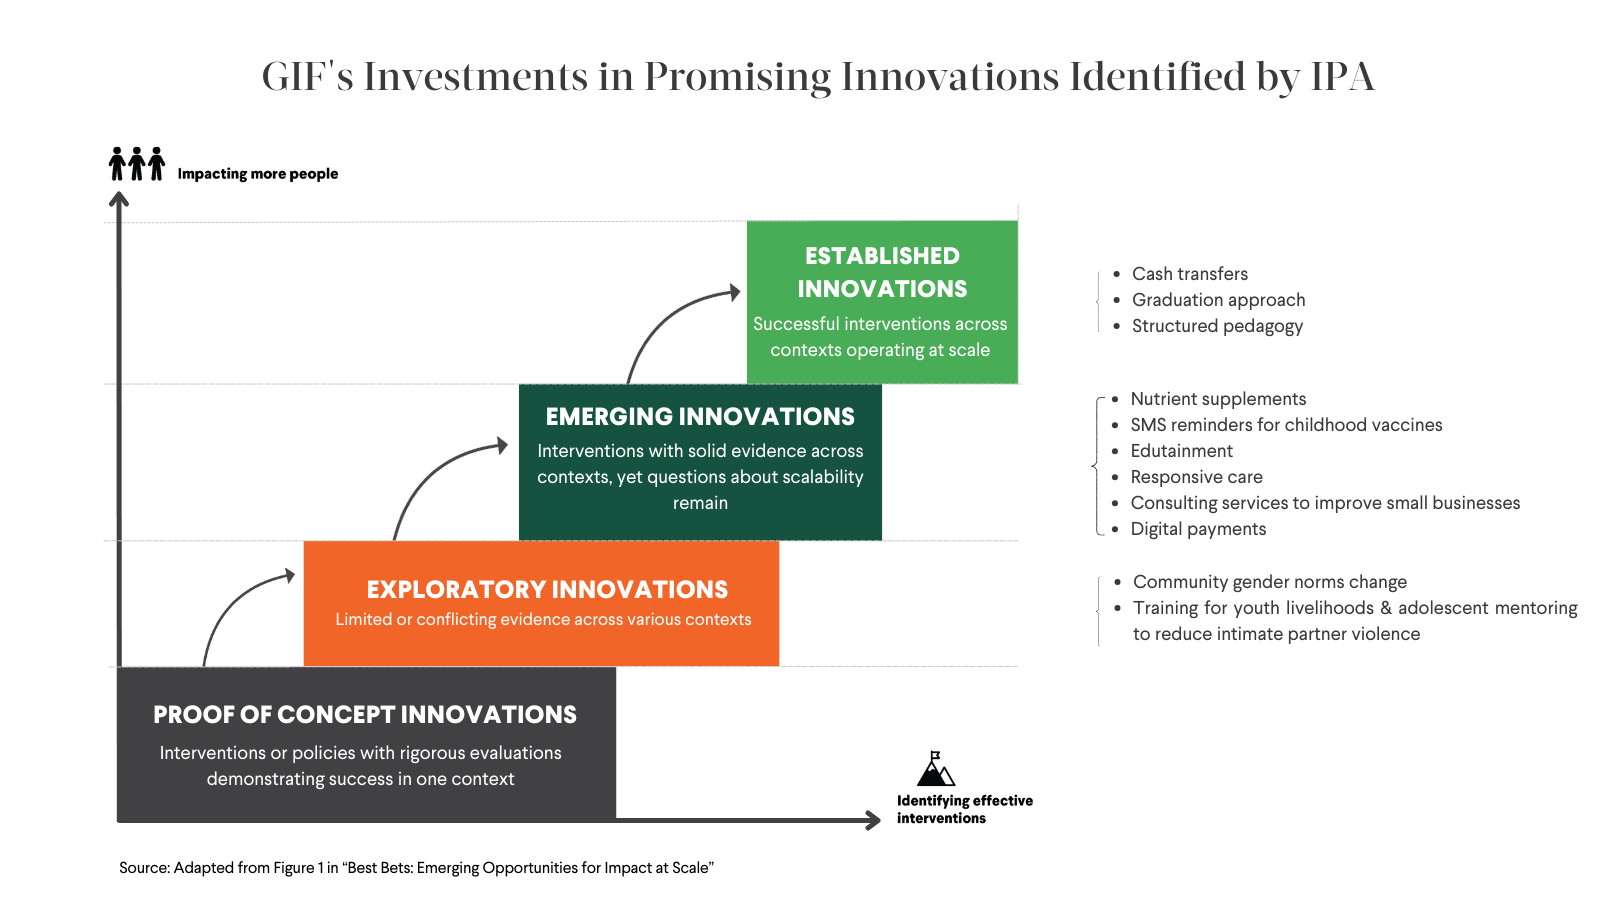 El gráfico muestra la inversión de GIF en innovaciones prometedoras identificadas por IPA